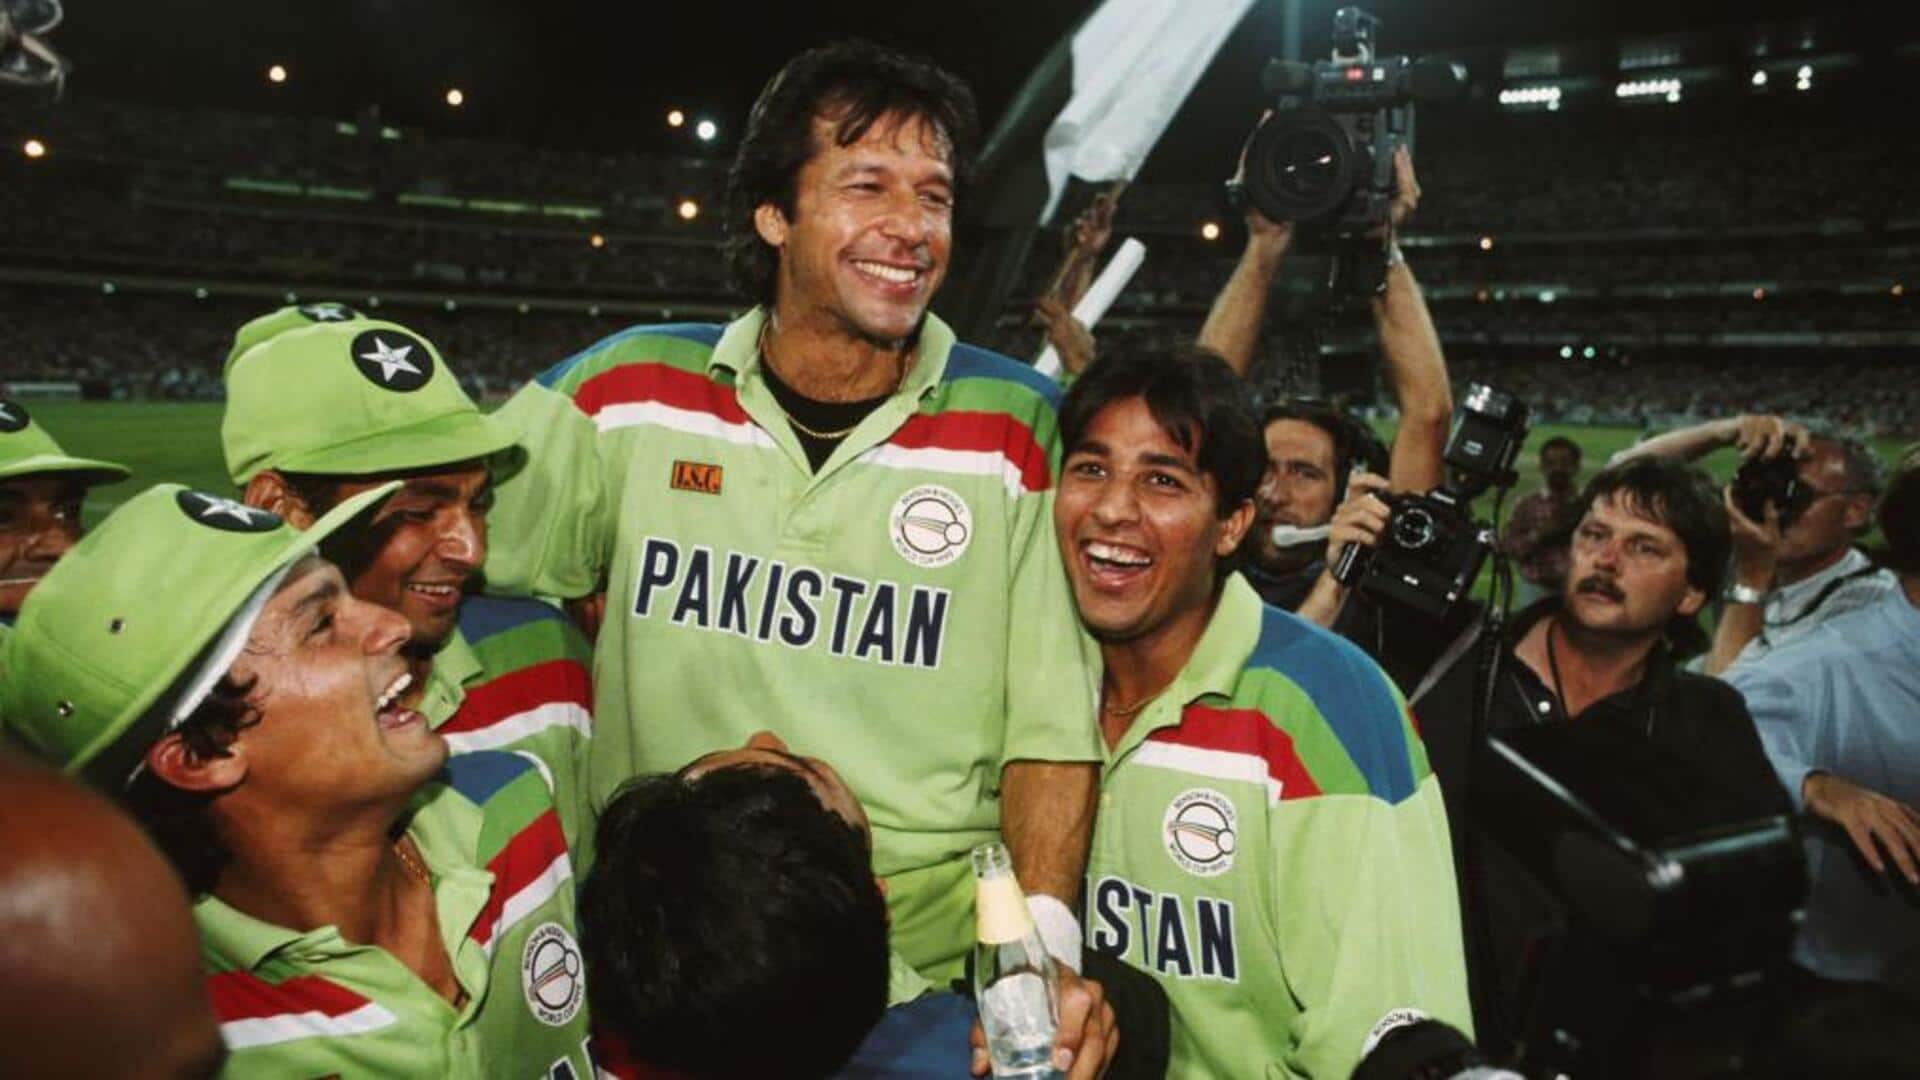 वनडे विश्व कप में पाकिस्तान क्रिकेट टीम का कैसा रहा है प्रदर्शन? जानिए रोचक आंकड़े 